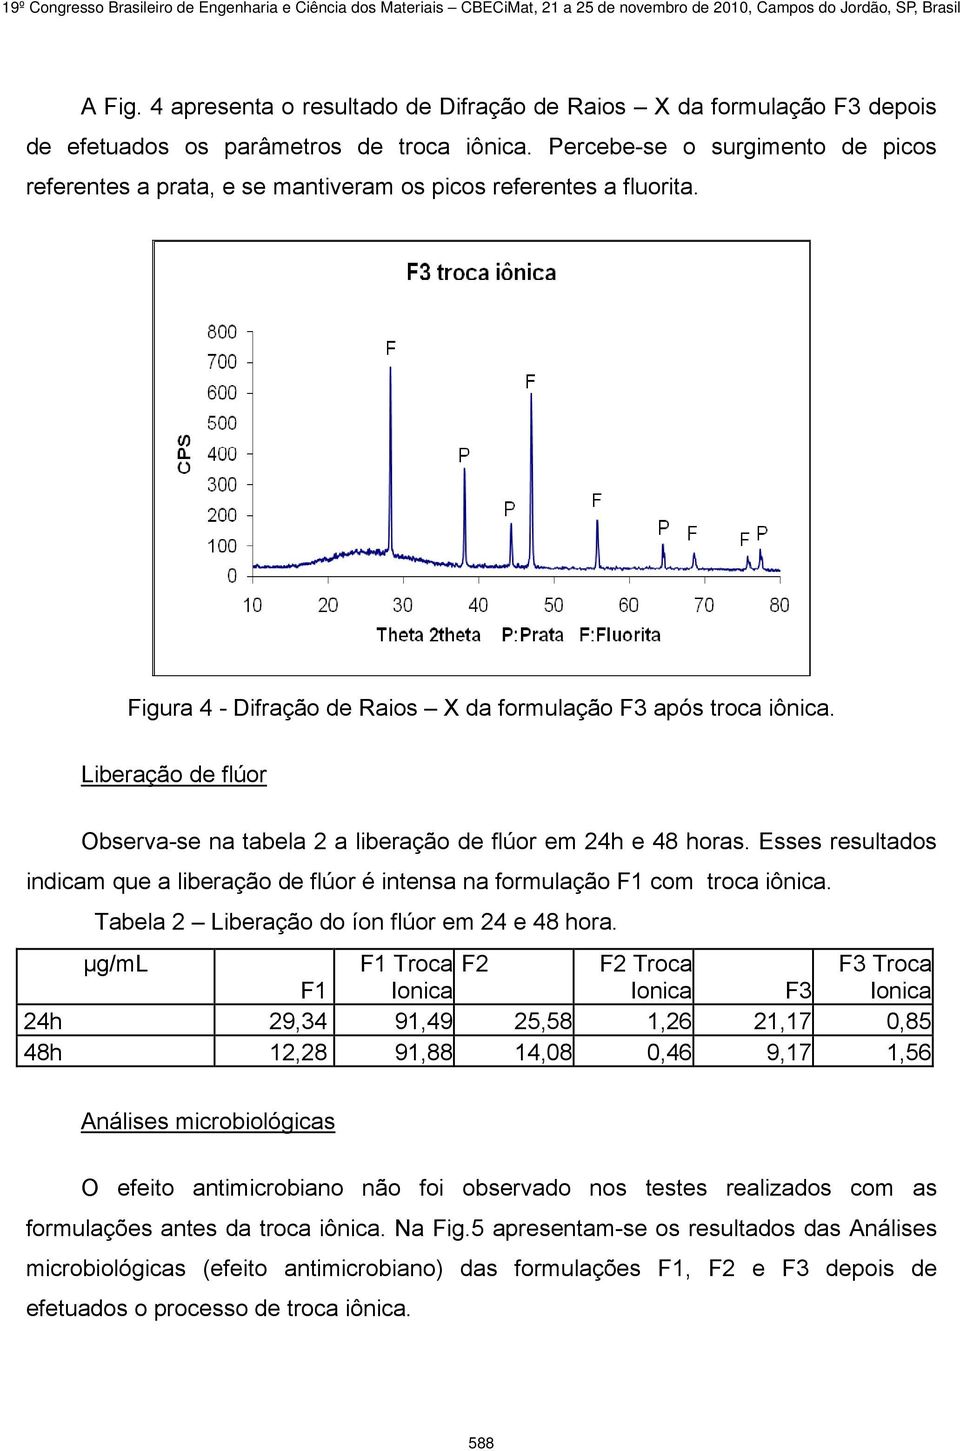 Liberação de flúor Observa-se na tabela 2 a liberação de flúor em 24h e 48 horas. Esses resultados indicam que a liberação de flúor é intensa na formulação F1 com troca iônica.